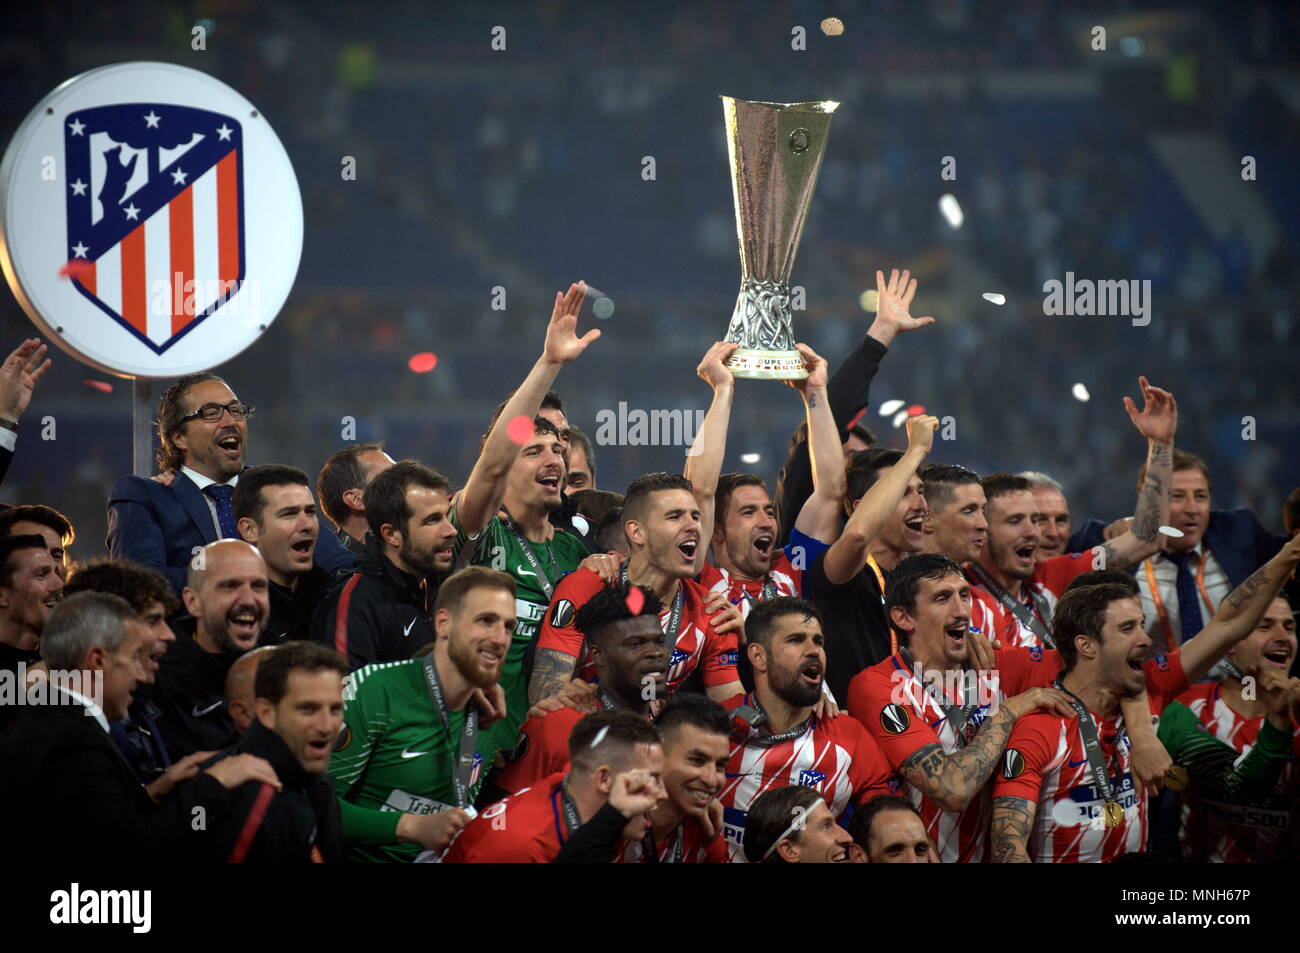 2018 europa league final